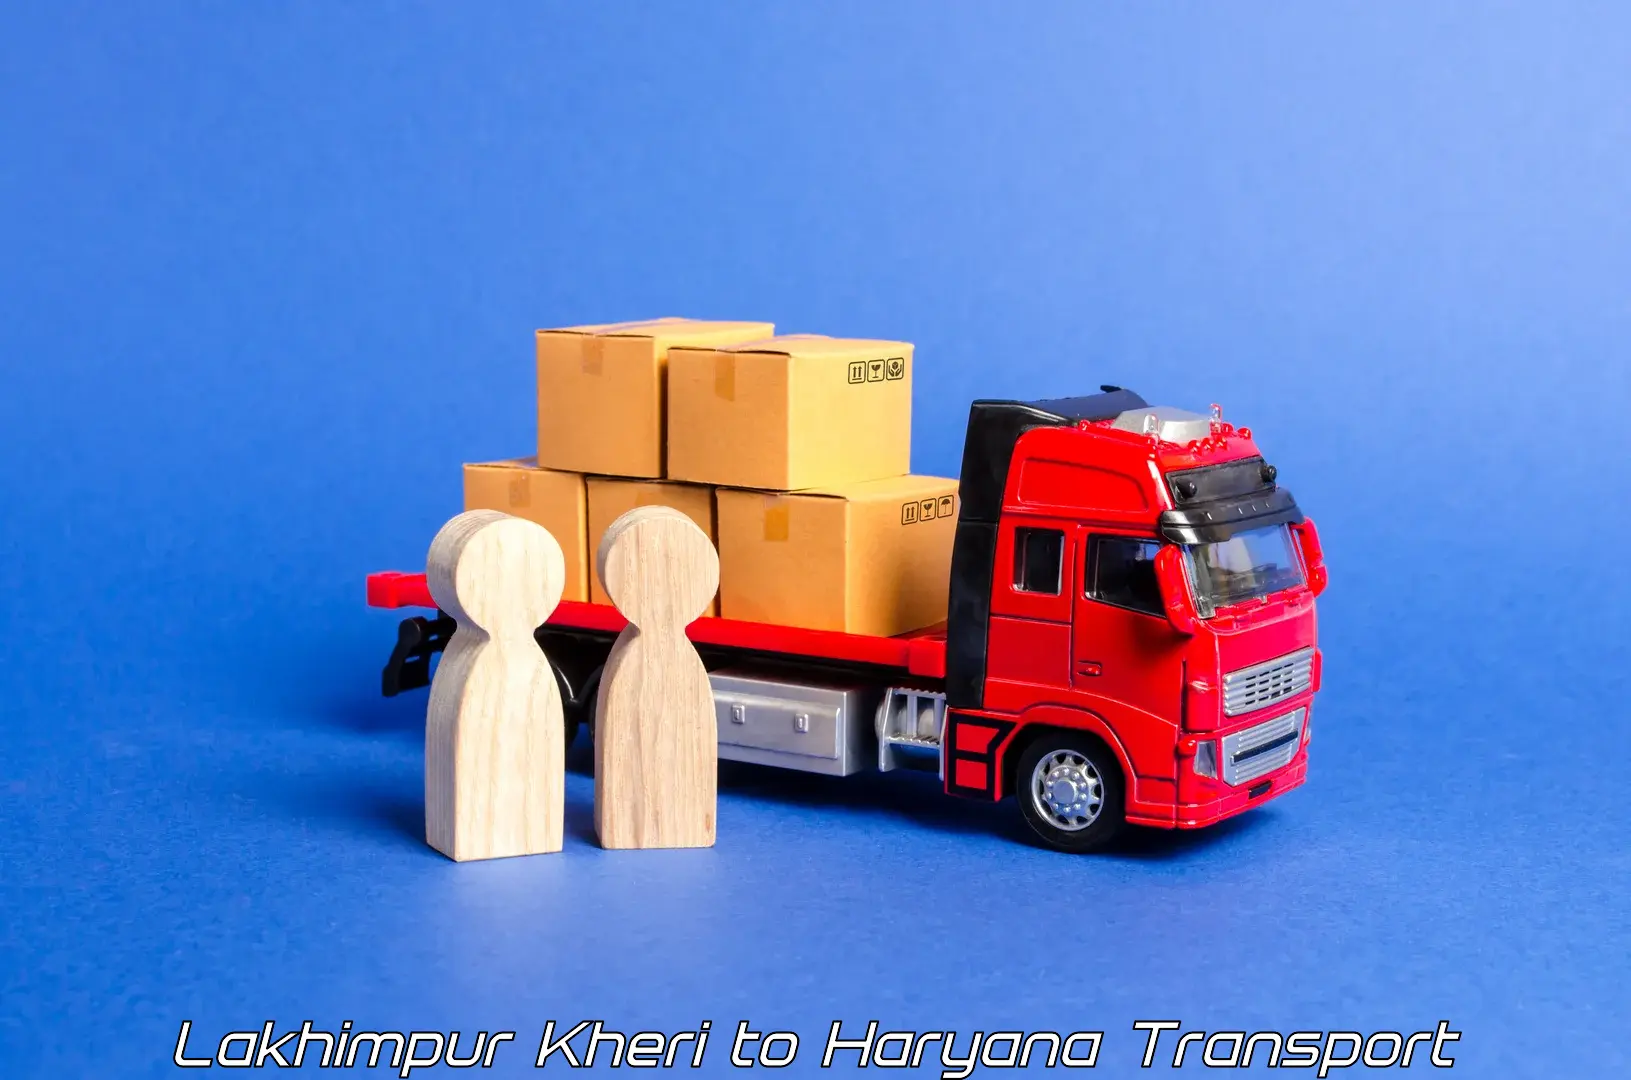 Lorry transport service Lakhimpur Kheri to Gurugram